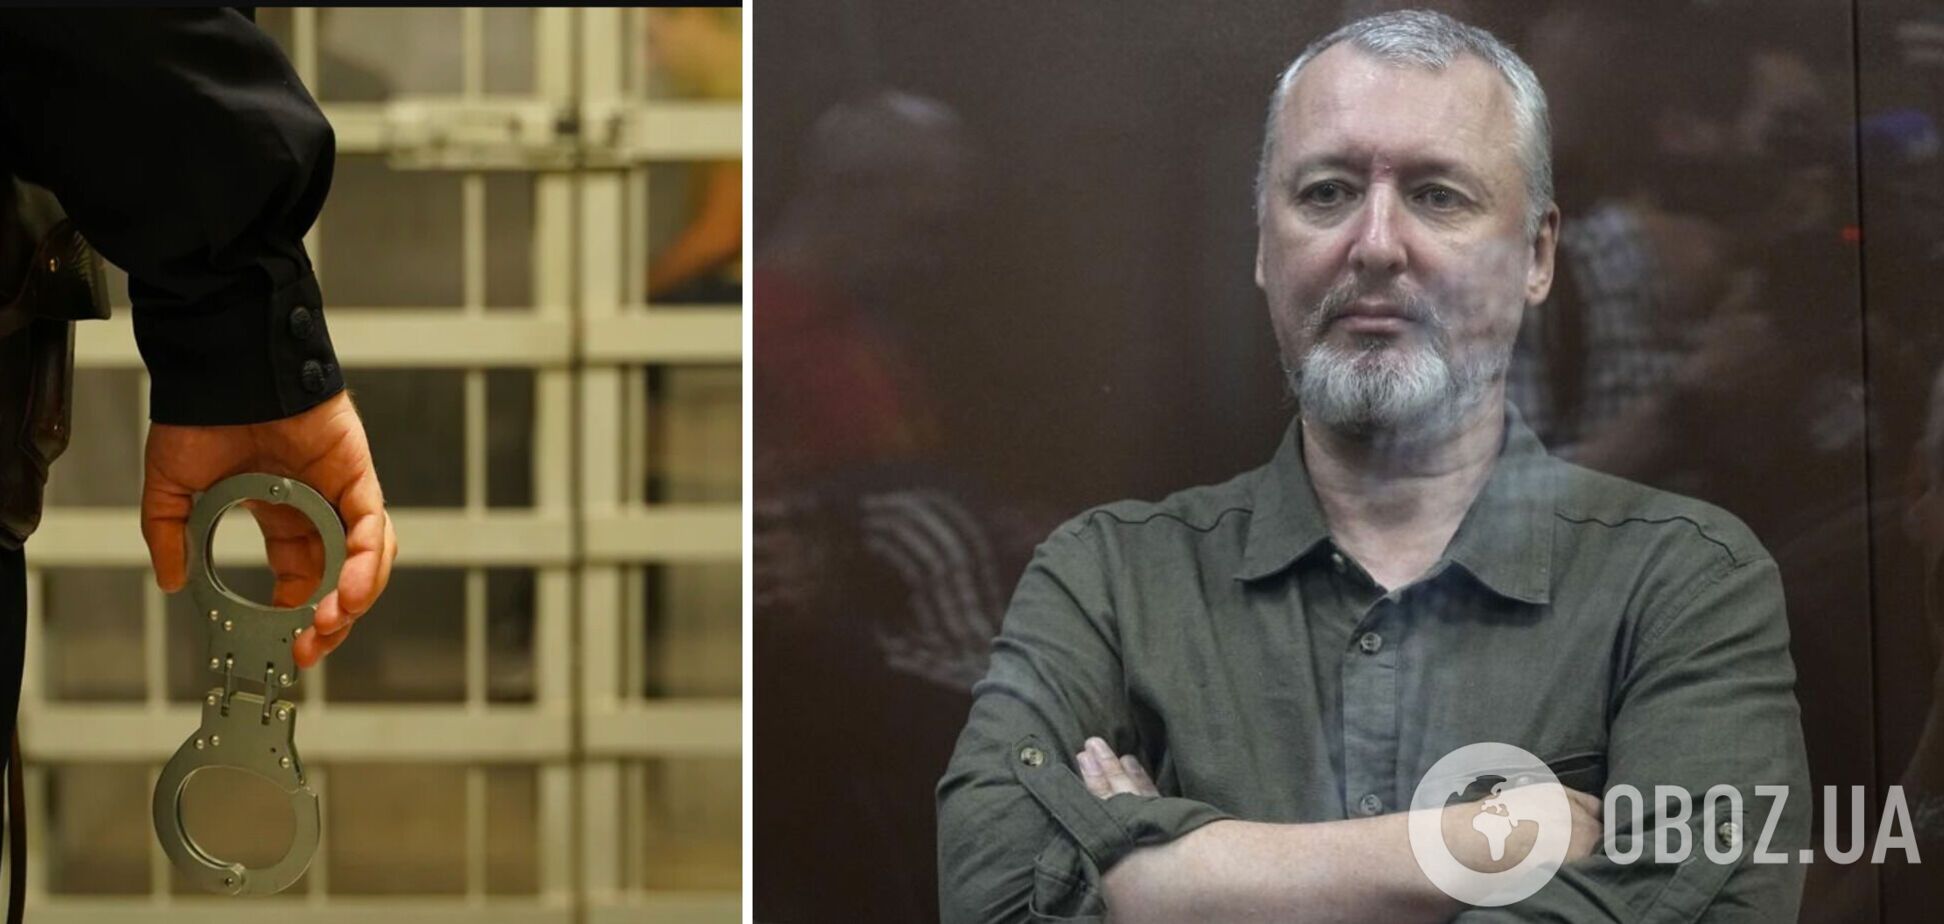 'Гіркіна знайшли повішеним': чи може бути правдою історія про вбивство терориста у в’язниці
